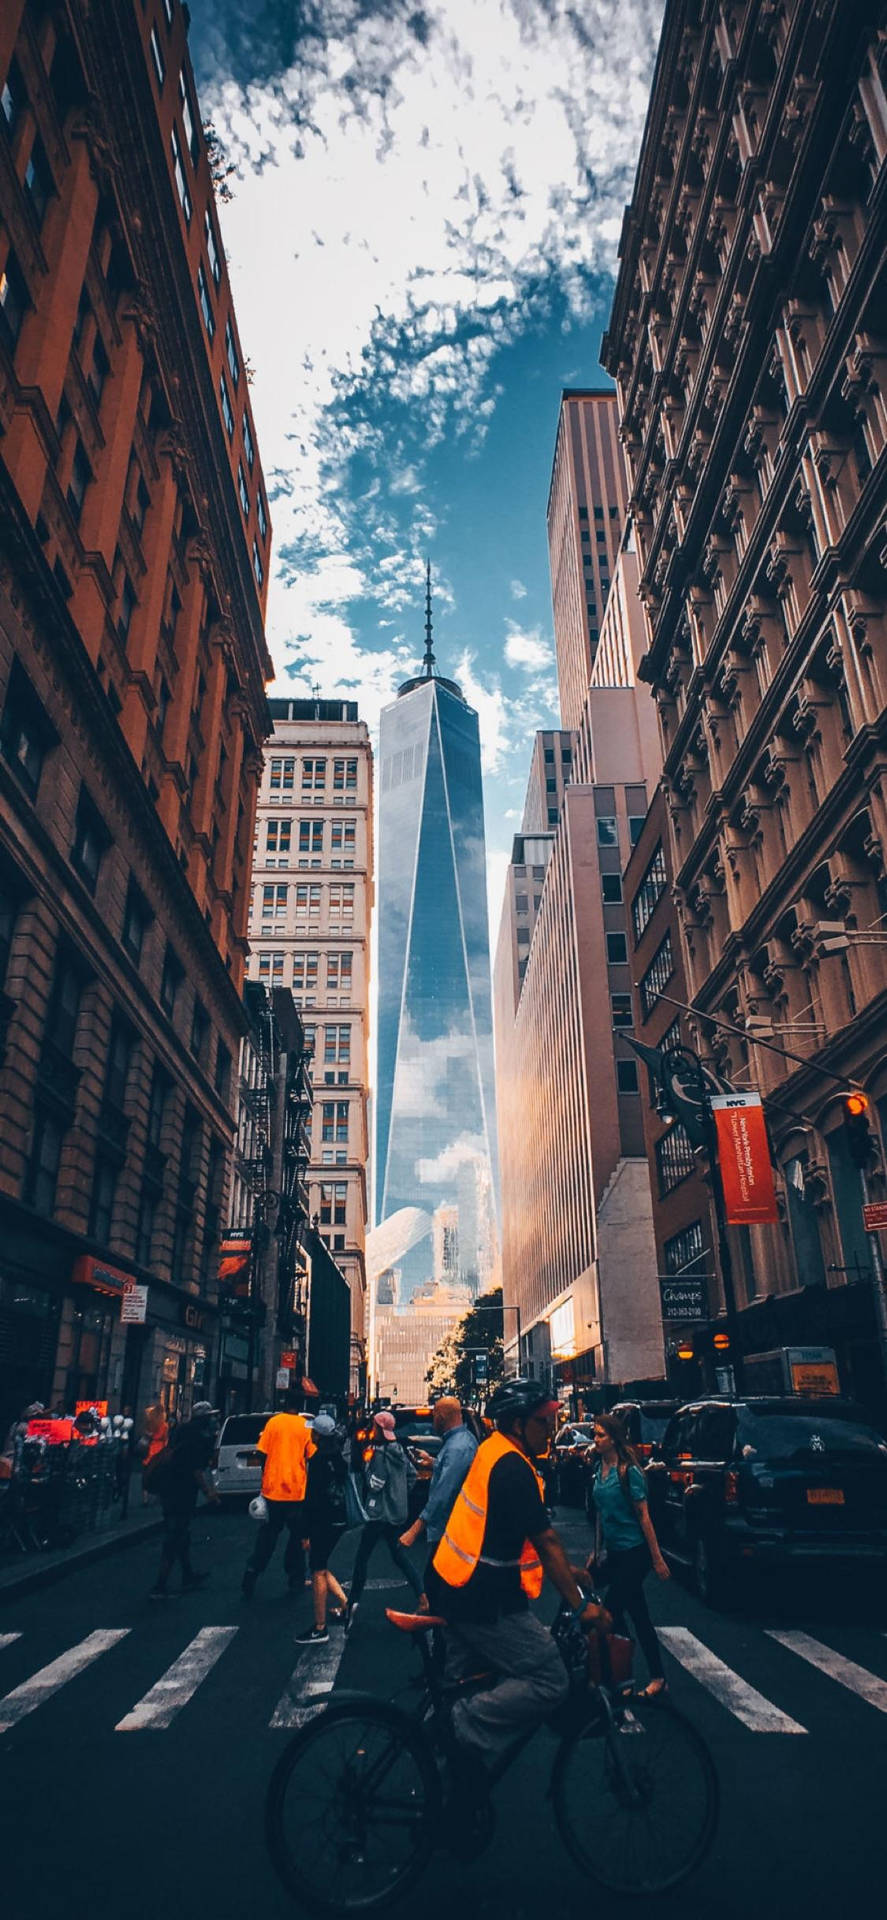 Überquerender Belebten Straßen Von New York Auf Dem Iphone Wallpaper